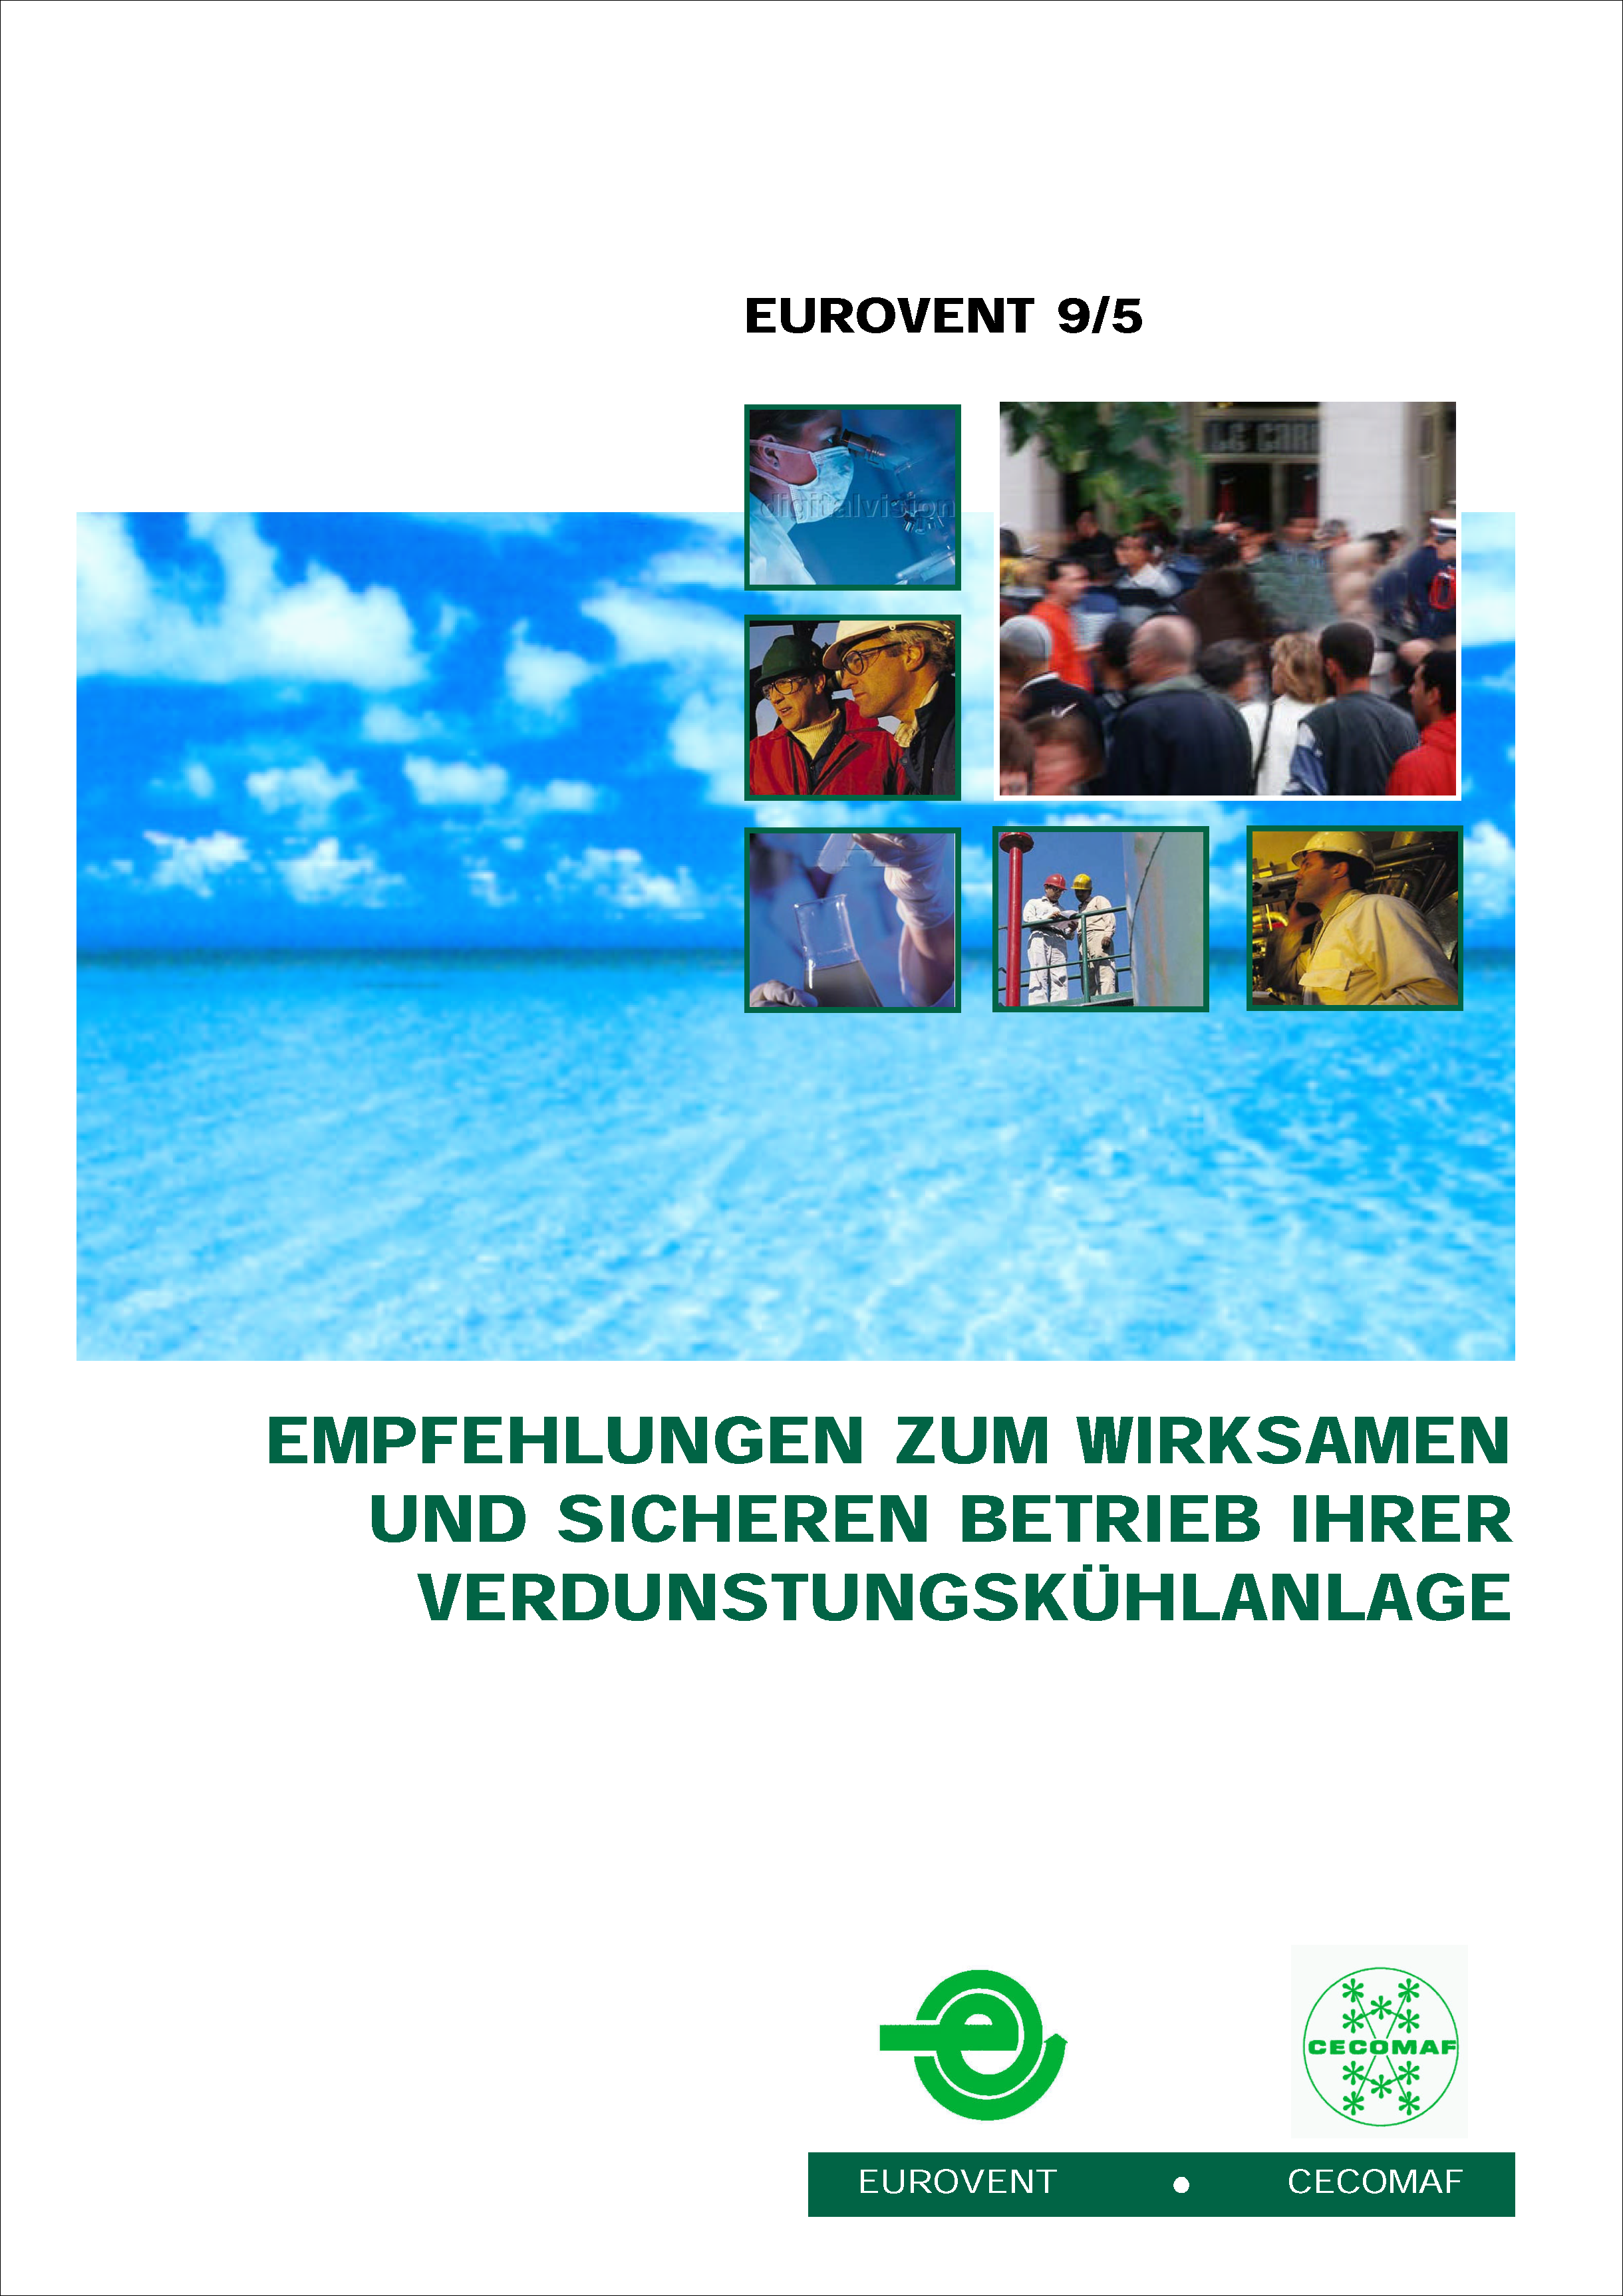 Eurovent 9/5 - 2002: Empfehlungen zum wirksamen und sicheren Betrieb ihrer Verdunstungskühlanlage